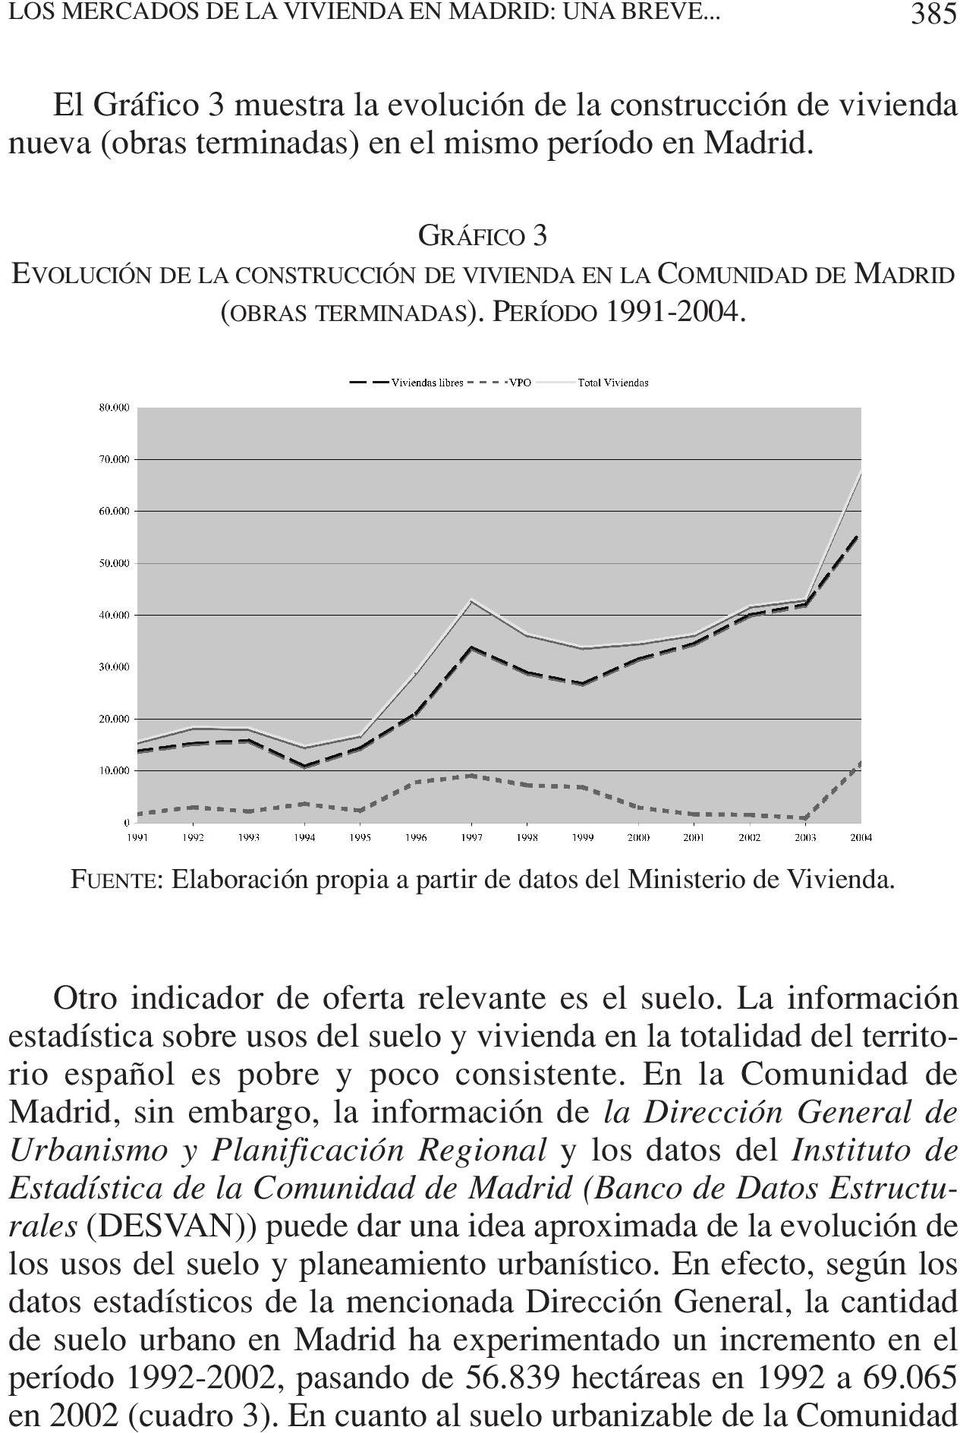 Otro indicador de oferta relevante es el suelo. La información estadística sobre usos del suelo y vivienda en la totalidad del territorio español es pobre y poco consistente.